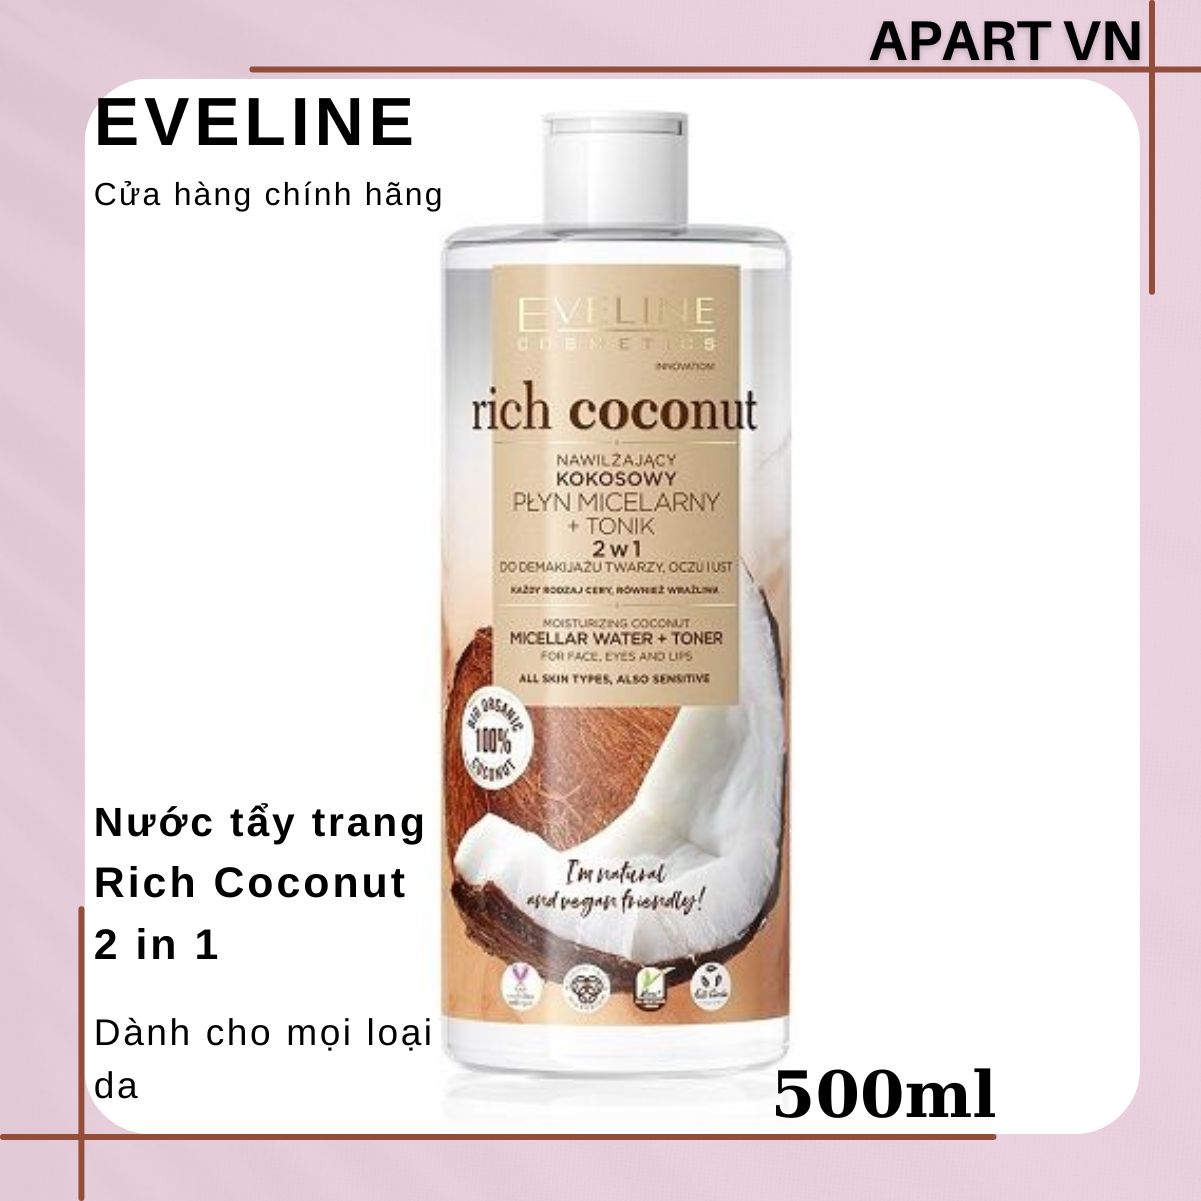 [ Tặng serum eveline 3% ] Nước tẩy trang Eveline Rich Coconut dưỡng ẩm tinh dầu dừa 2 tác động 500ML